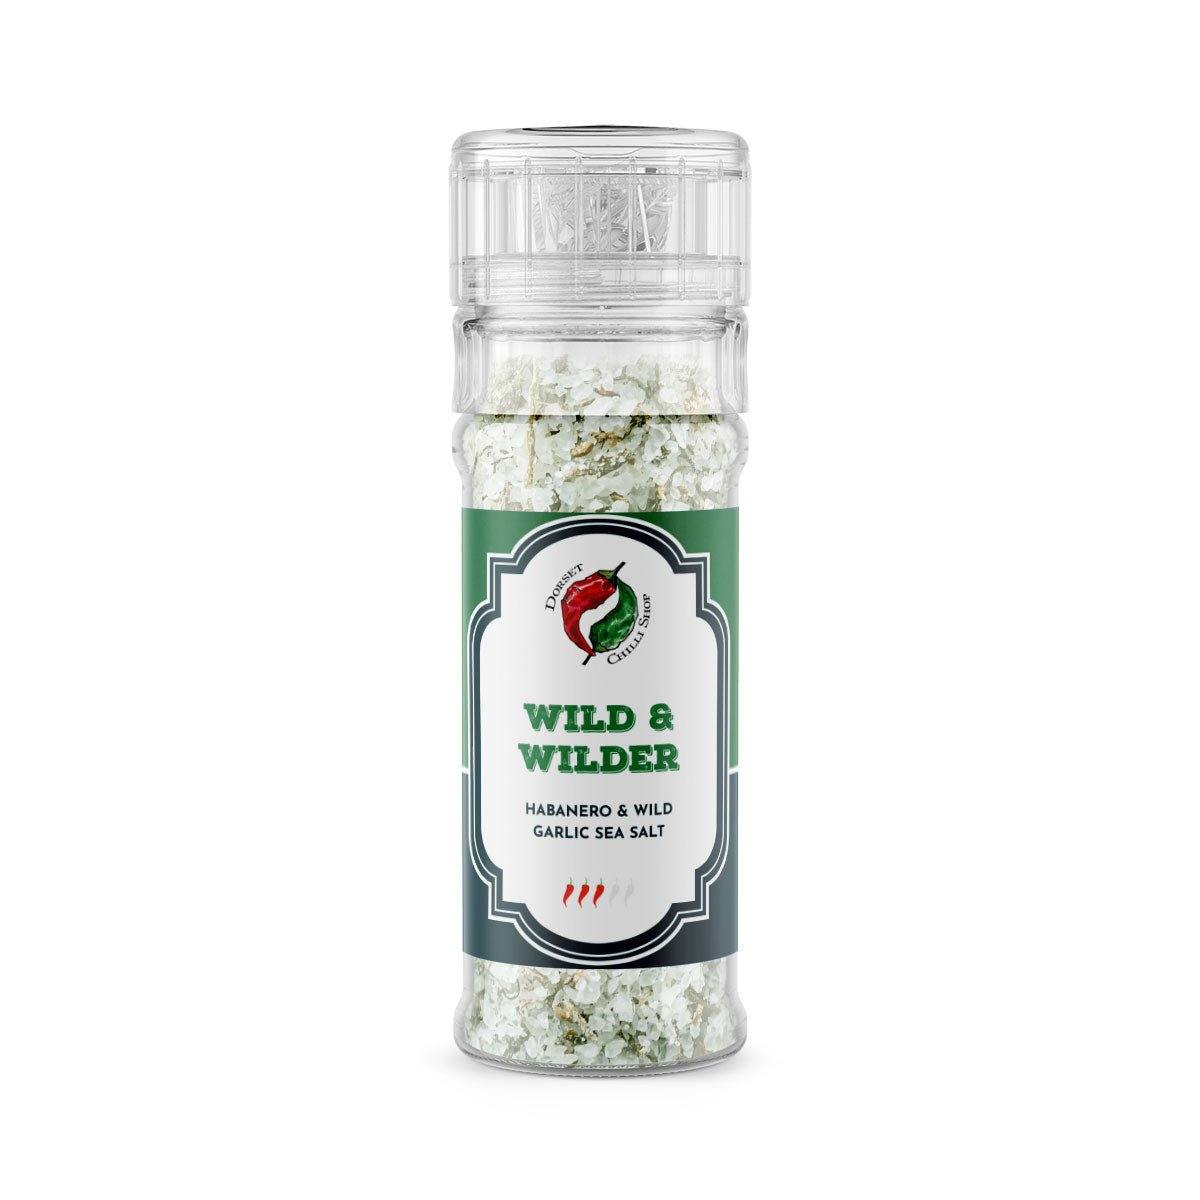 Wild & Wilder | 80g | Dorset Chilli Shop | Habanero & Wild Garlic Sea Salt - One Stop Chilli Shop